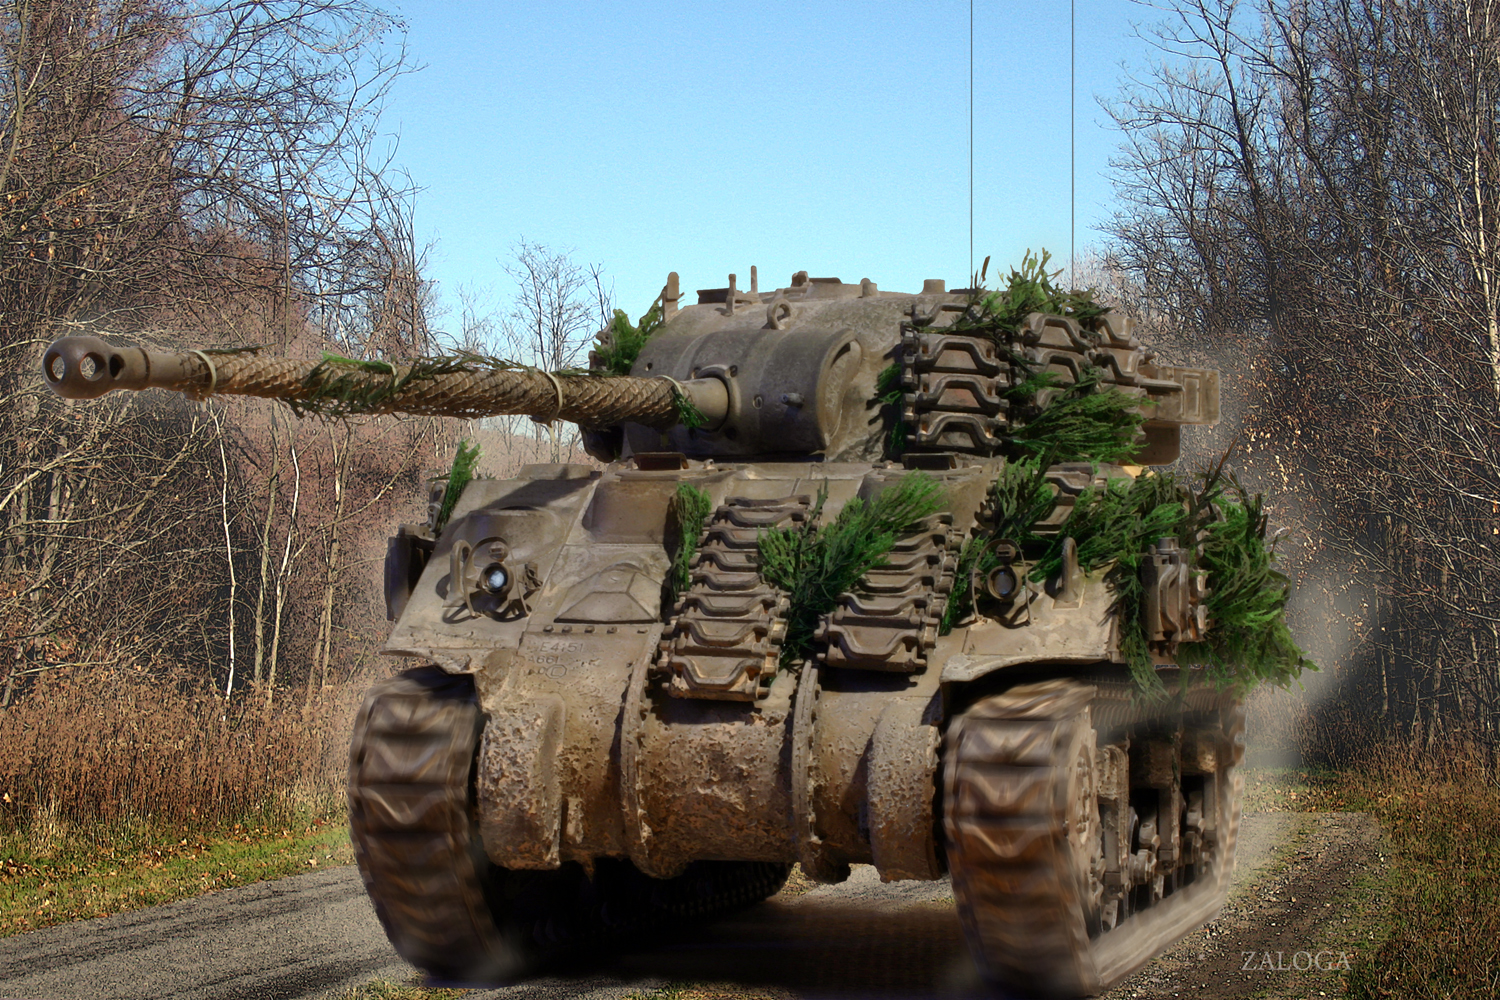 sherman firefly tank 1944 ile ilgili gÃ¶rsel sonucu